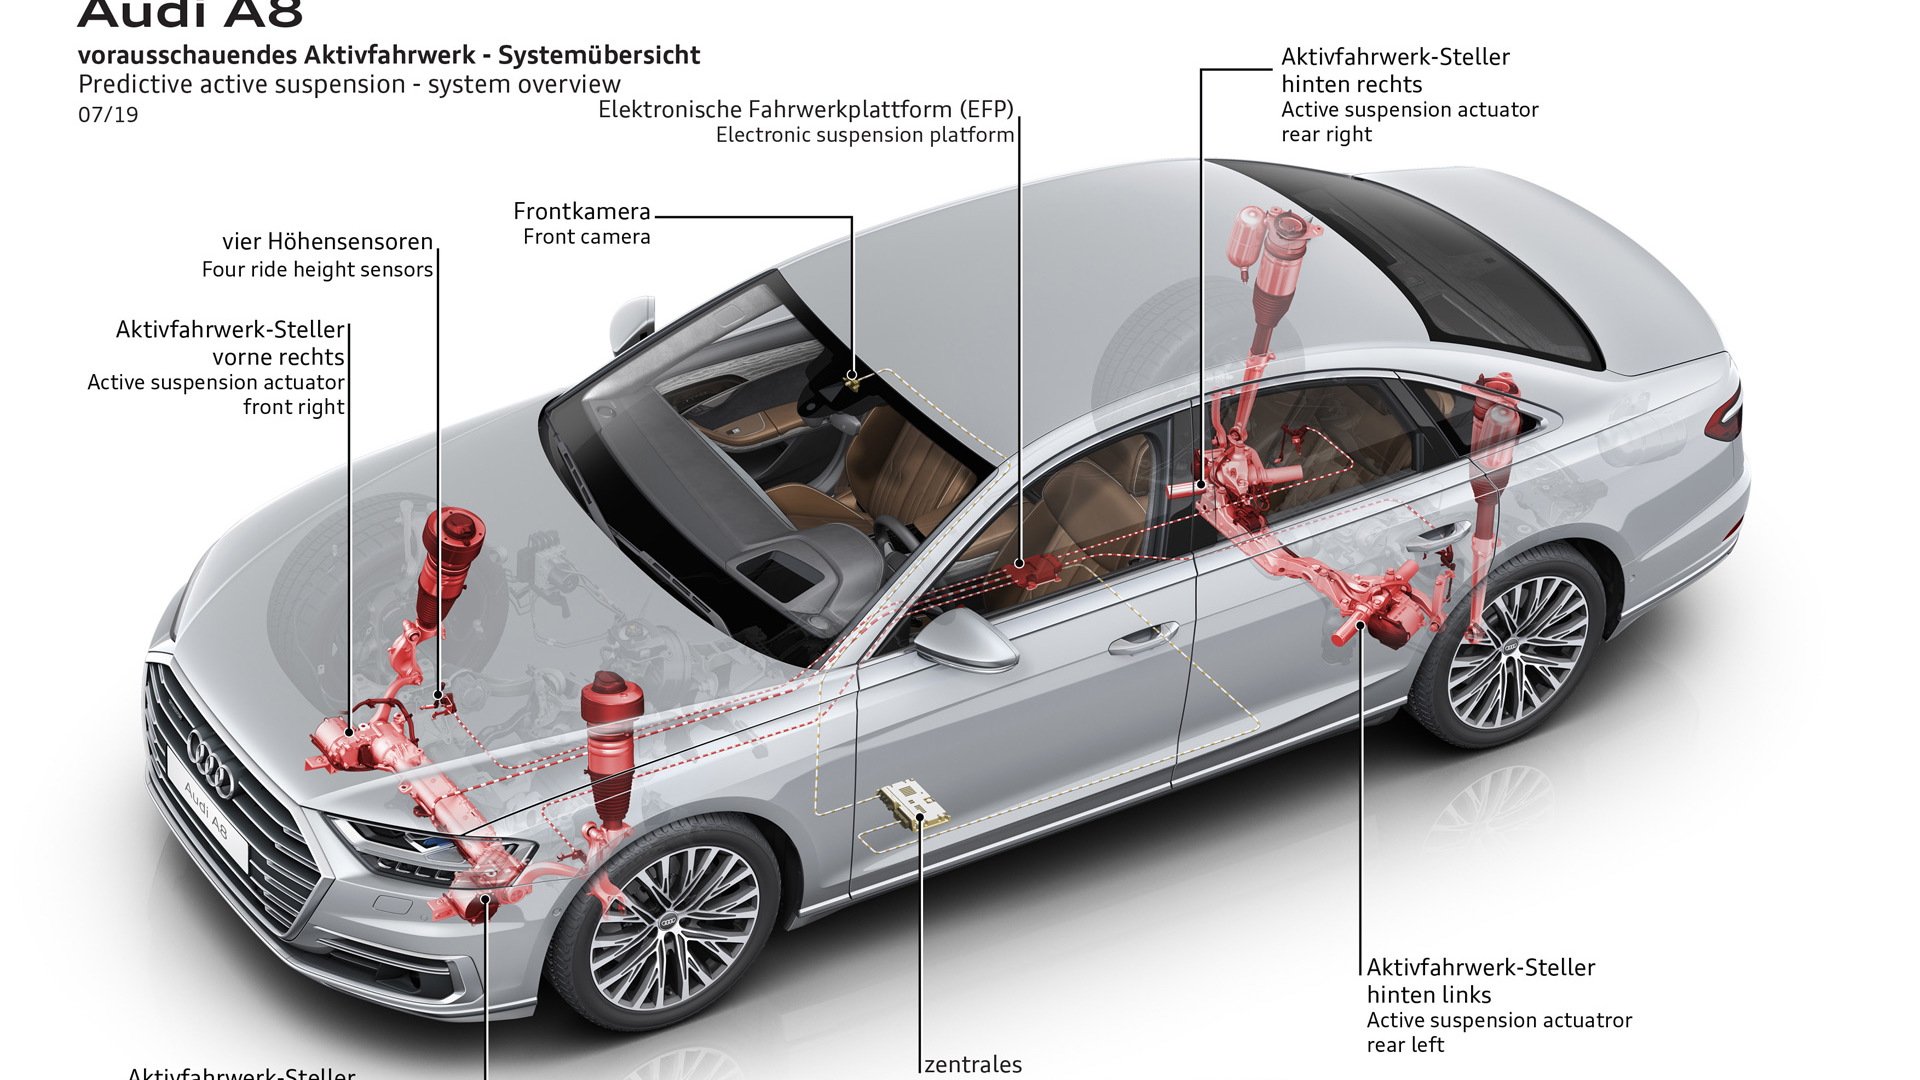 2020 Audi A8's predictive active suspension